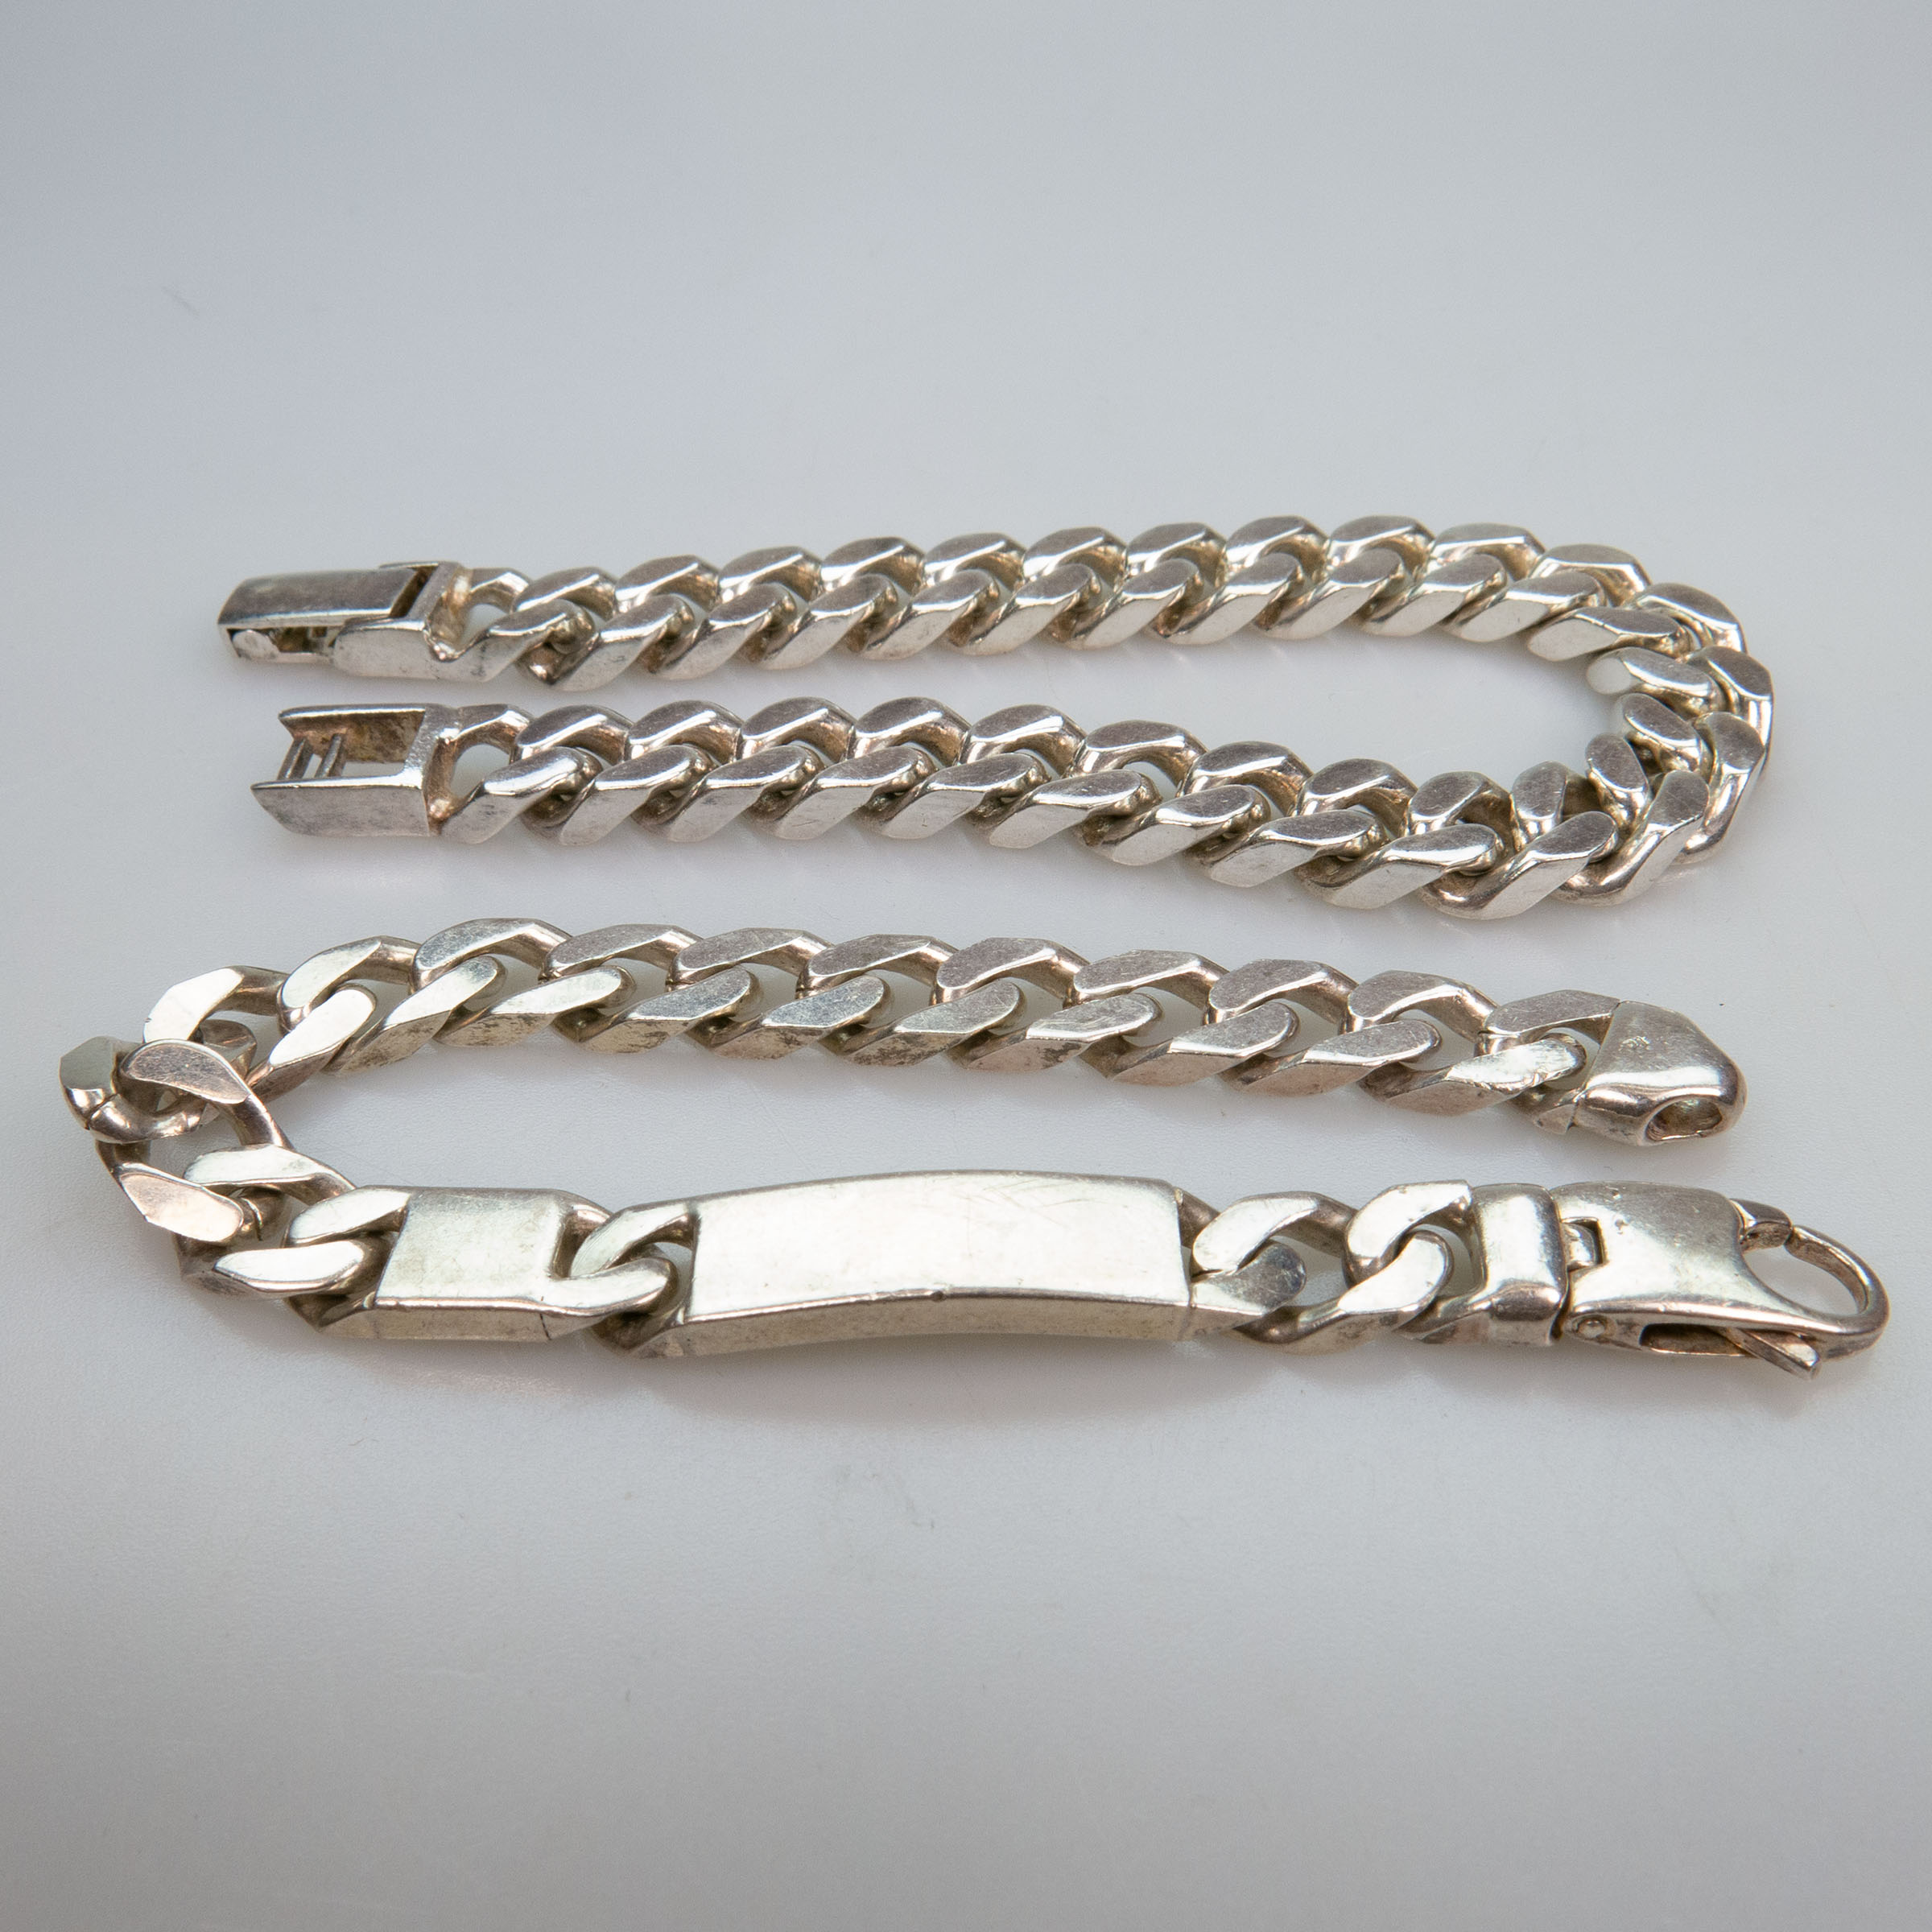 2 Italian Sterling Silver Curb Link Bracelets